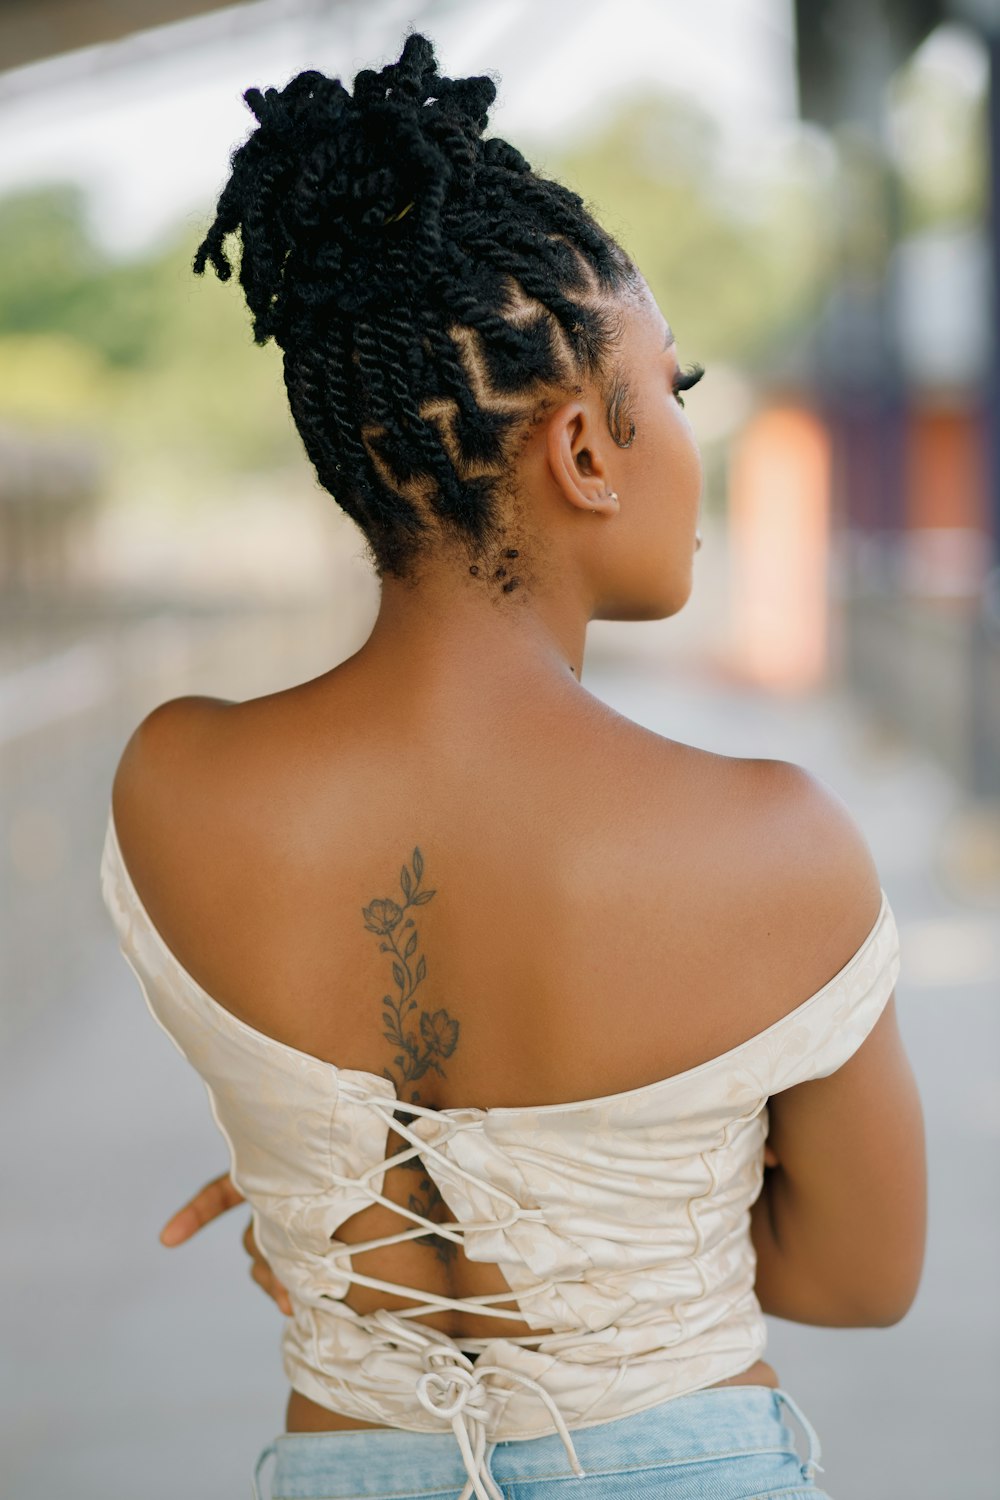 Una mujer con un tatuaje en la espalda